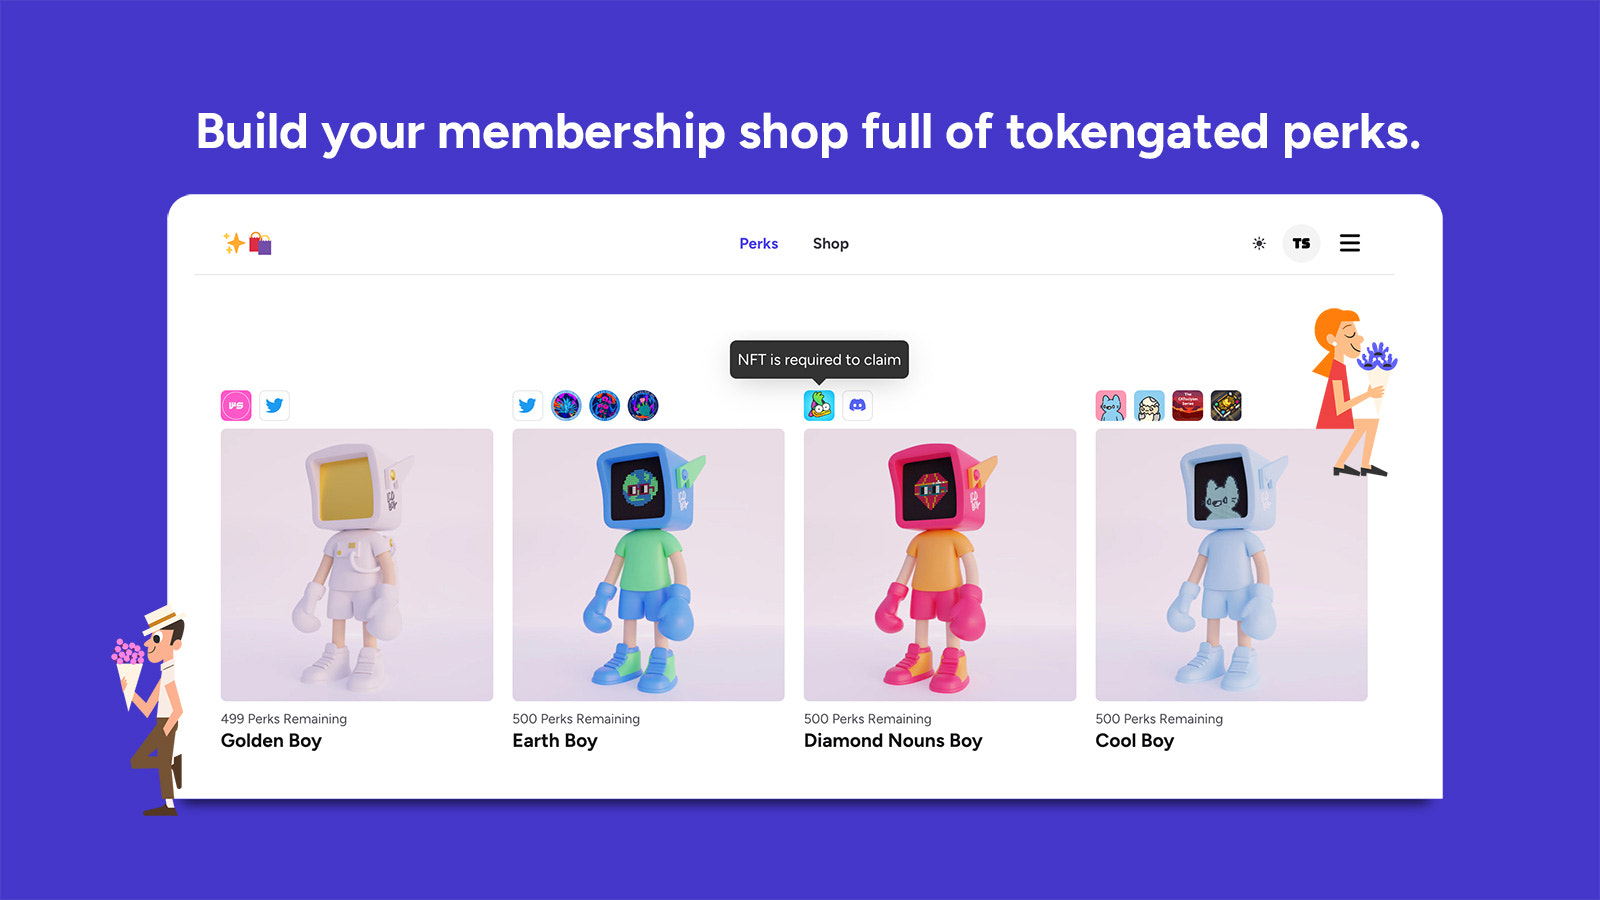 Construye tu tienda de membresía llena de beneficios con acceso por tokens.